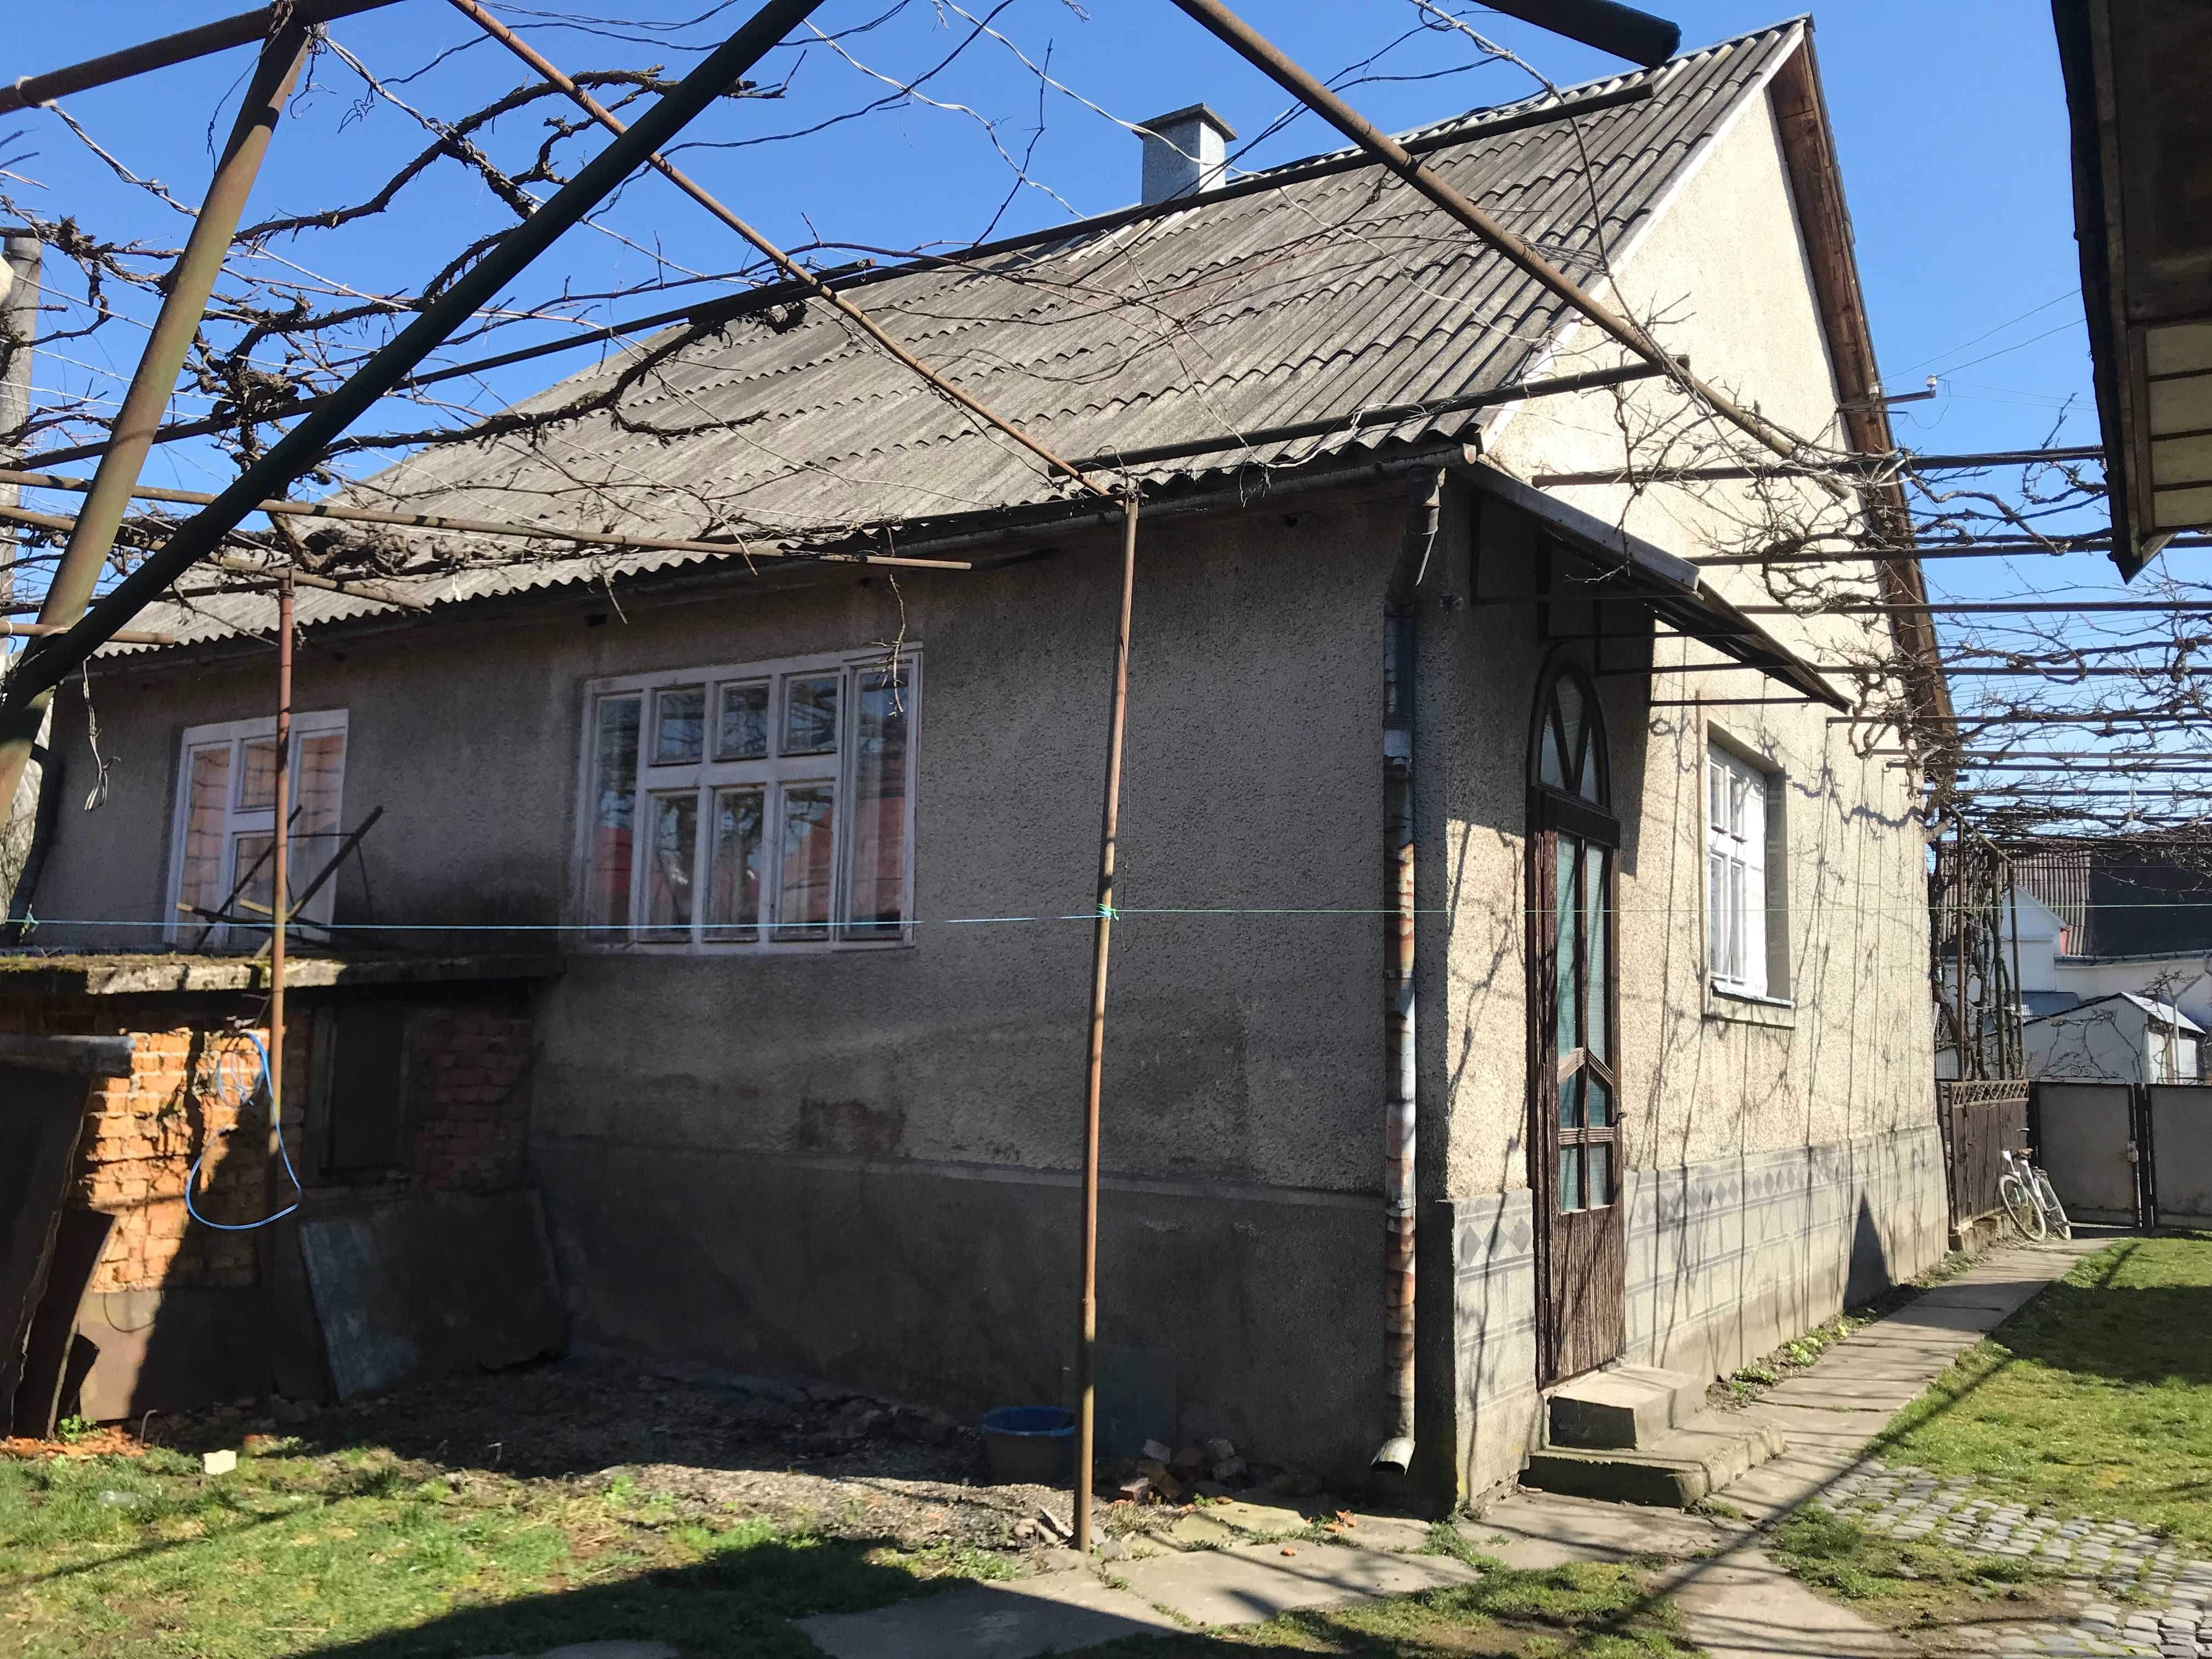 Продається будинок в селі Сокирниця